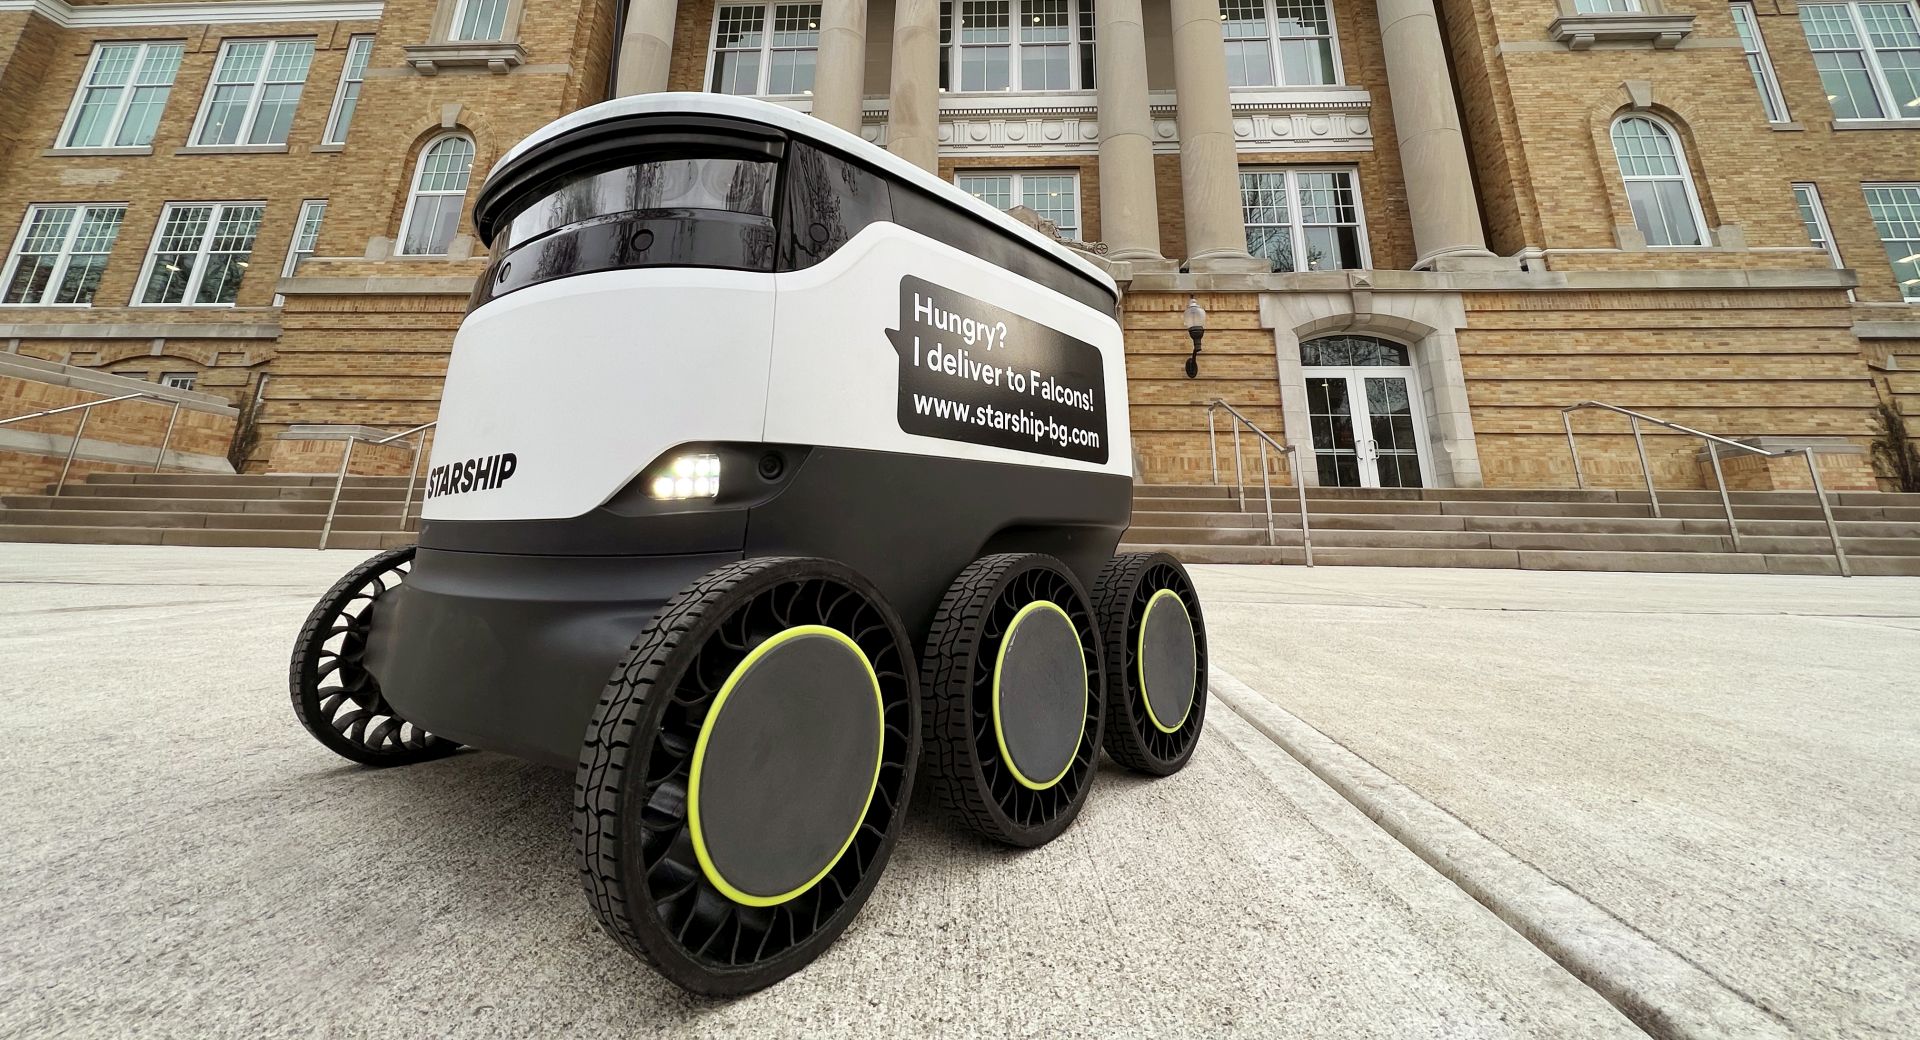 Predstavljena je bezračna guma za autonomne dostavne robote